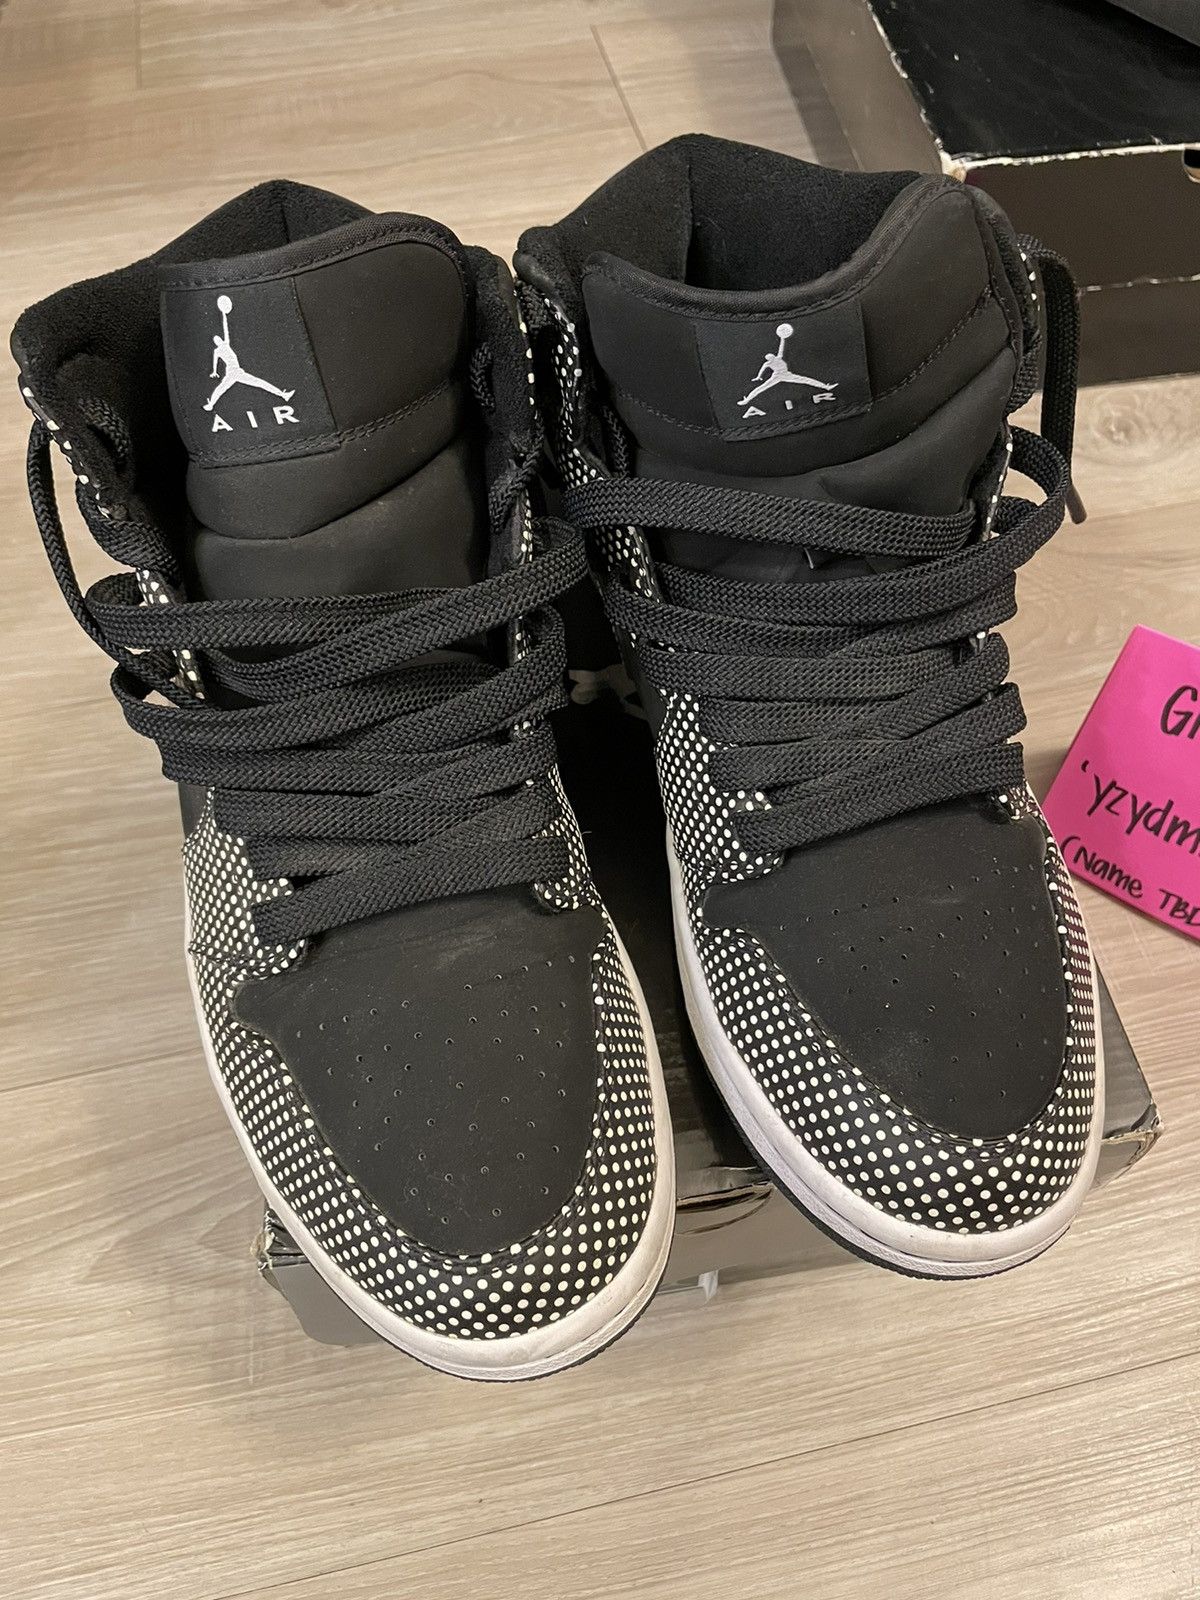 Nike Air Jordan 1 Retro Black White Size US 11.5 / EU 44-45 - 6 Thumbnail